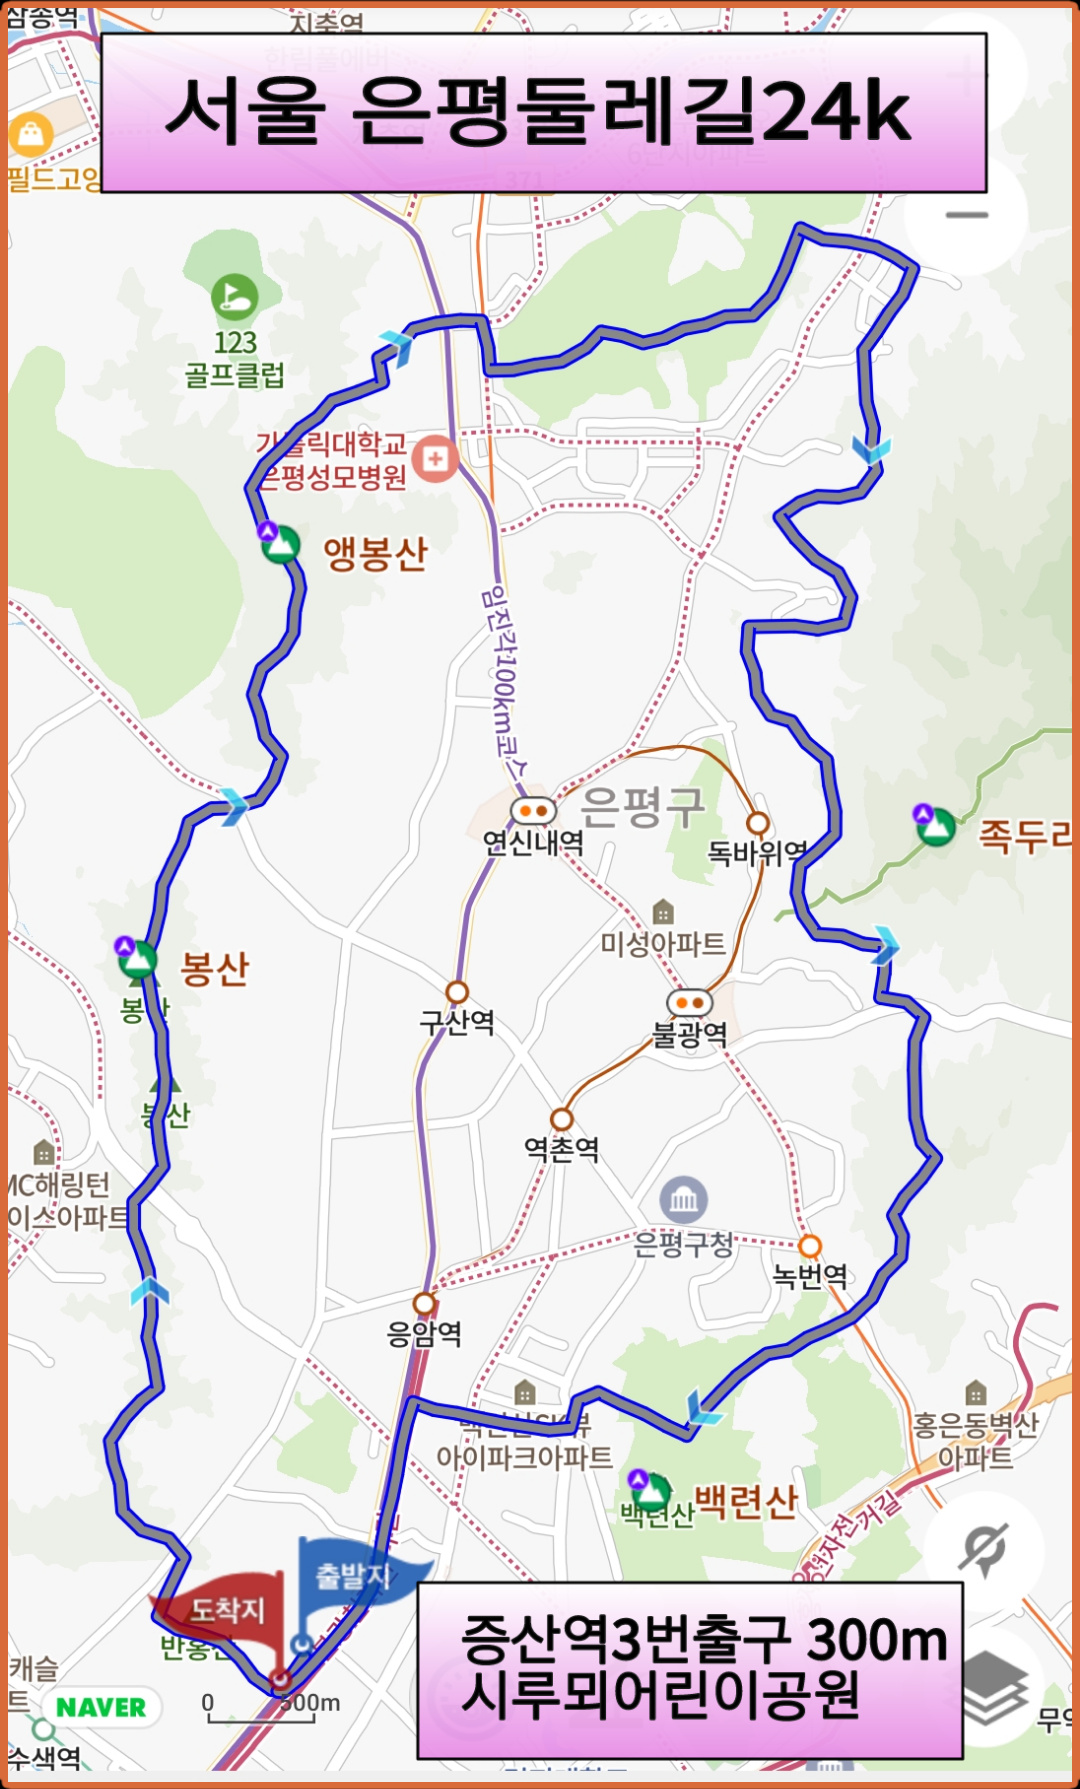 서울 은평둘레길 24km 코스맵